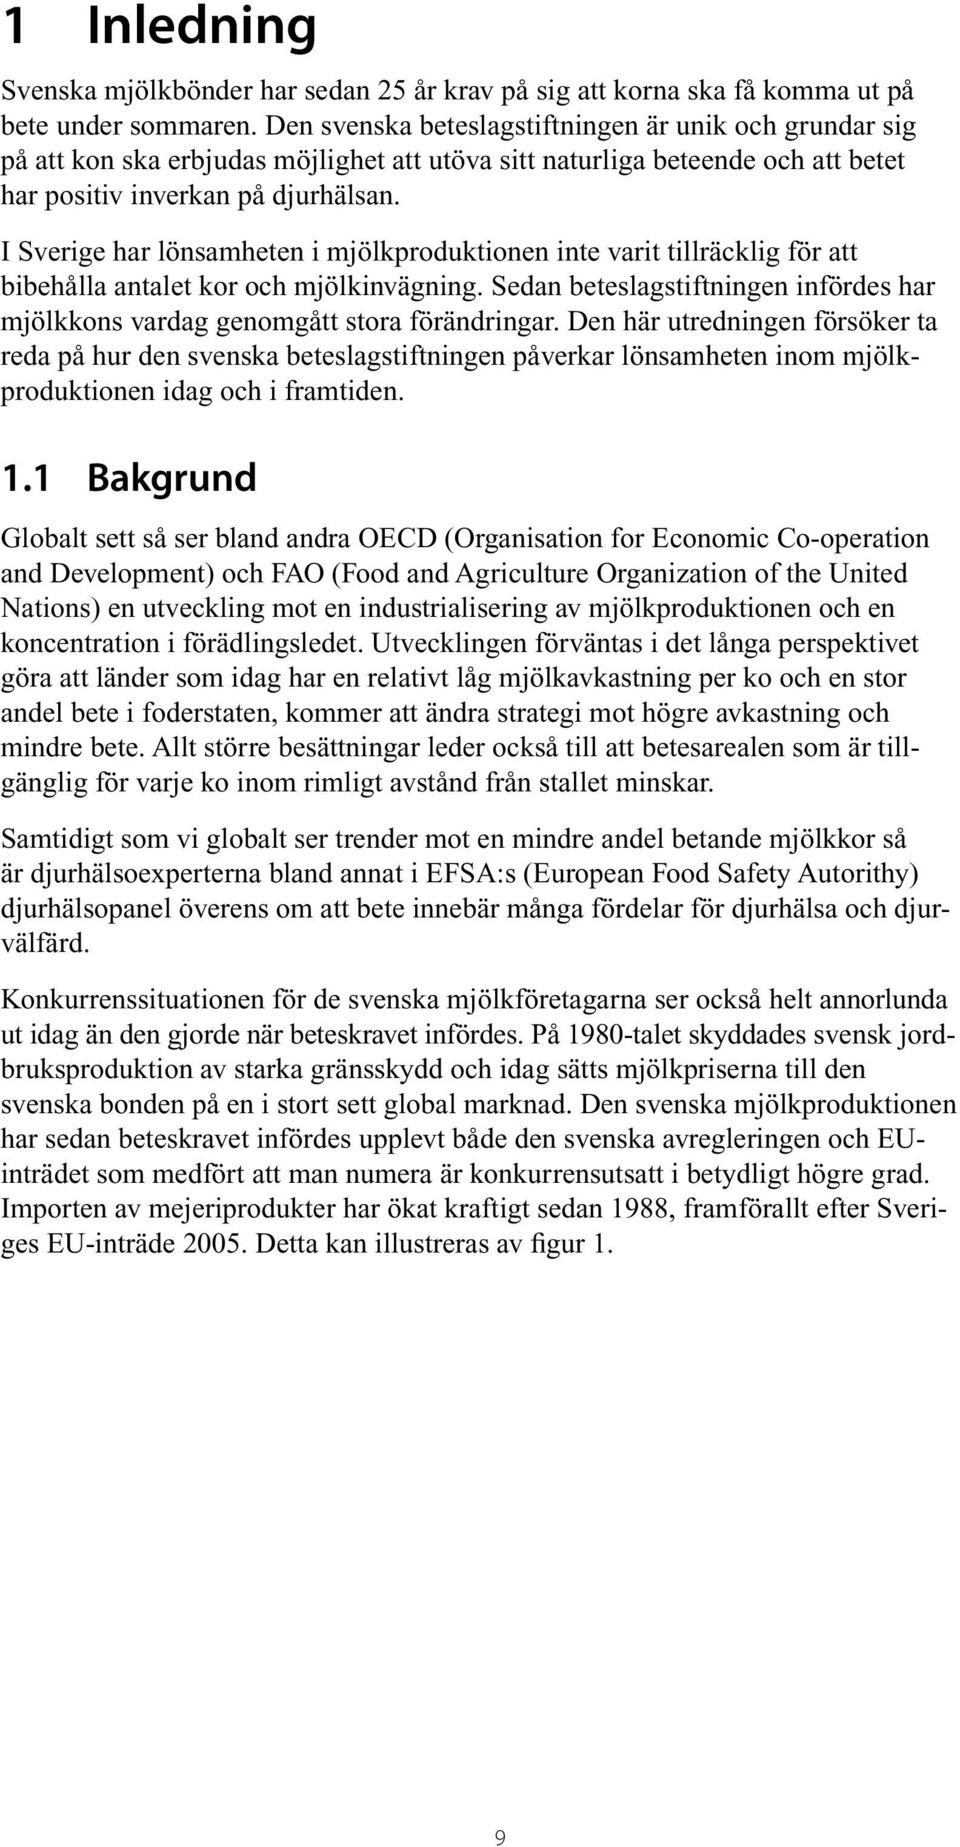 I Sverige har lönsamheten i mjölkproduktionen inte varit tillräcklig för att bi behålla antalet kor och mjölkinvägning.